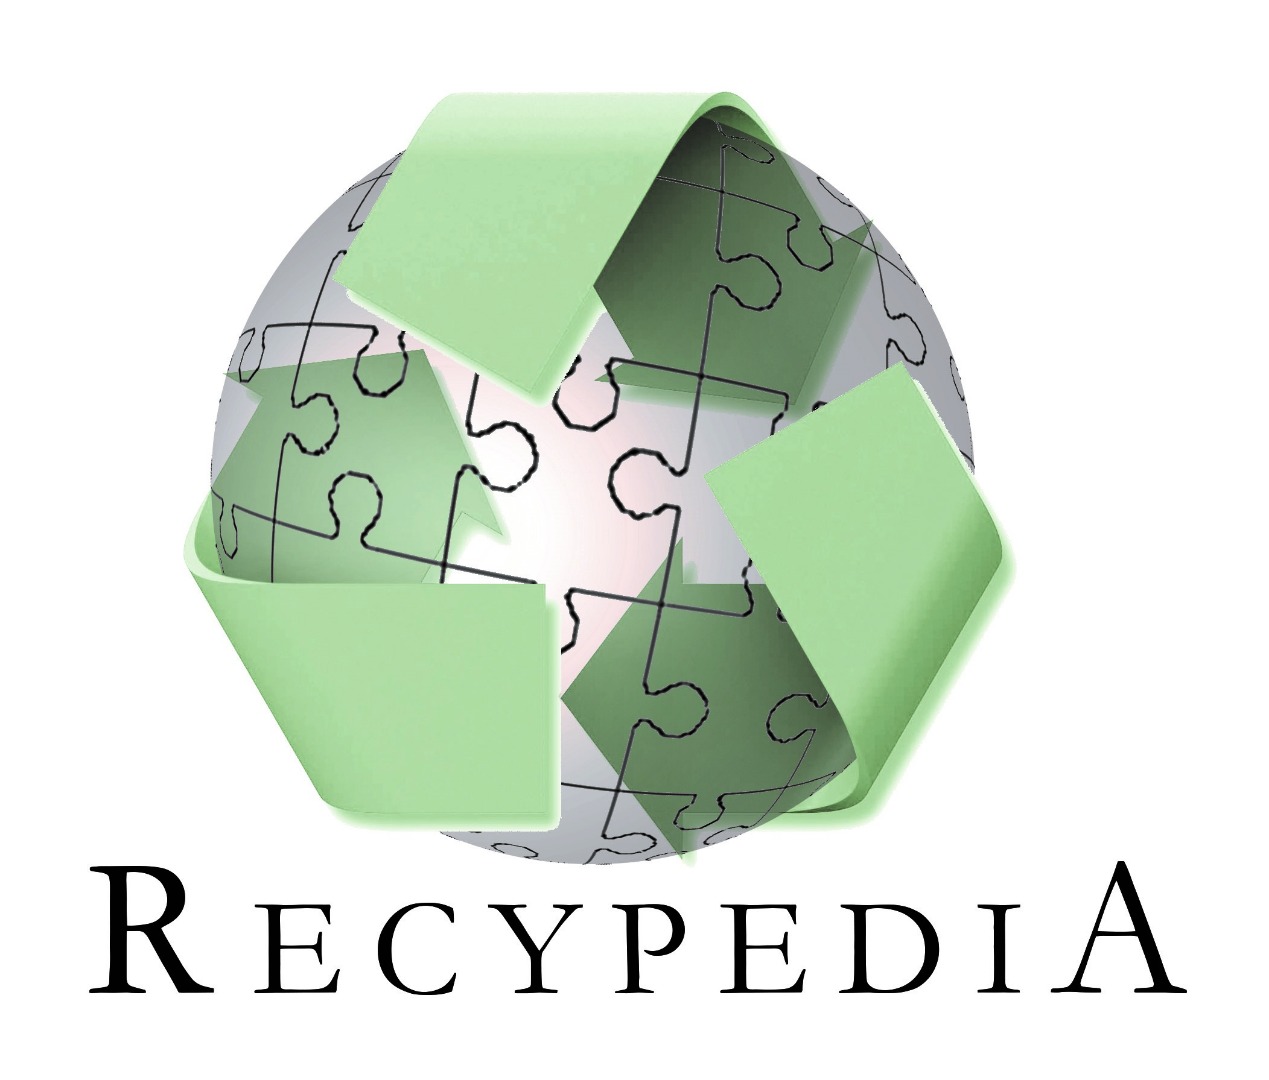 Recypedia